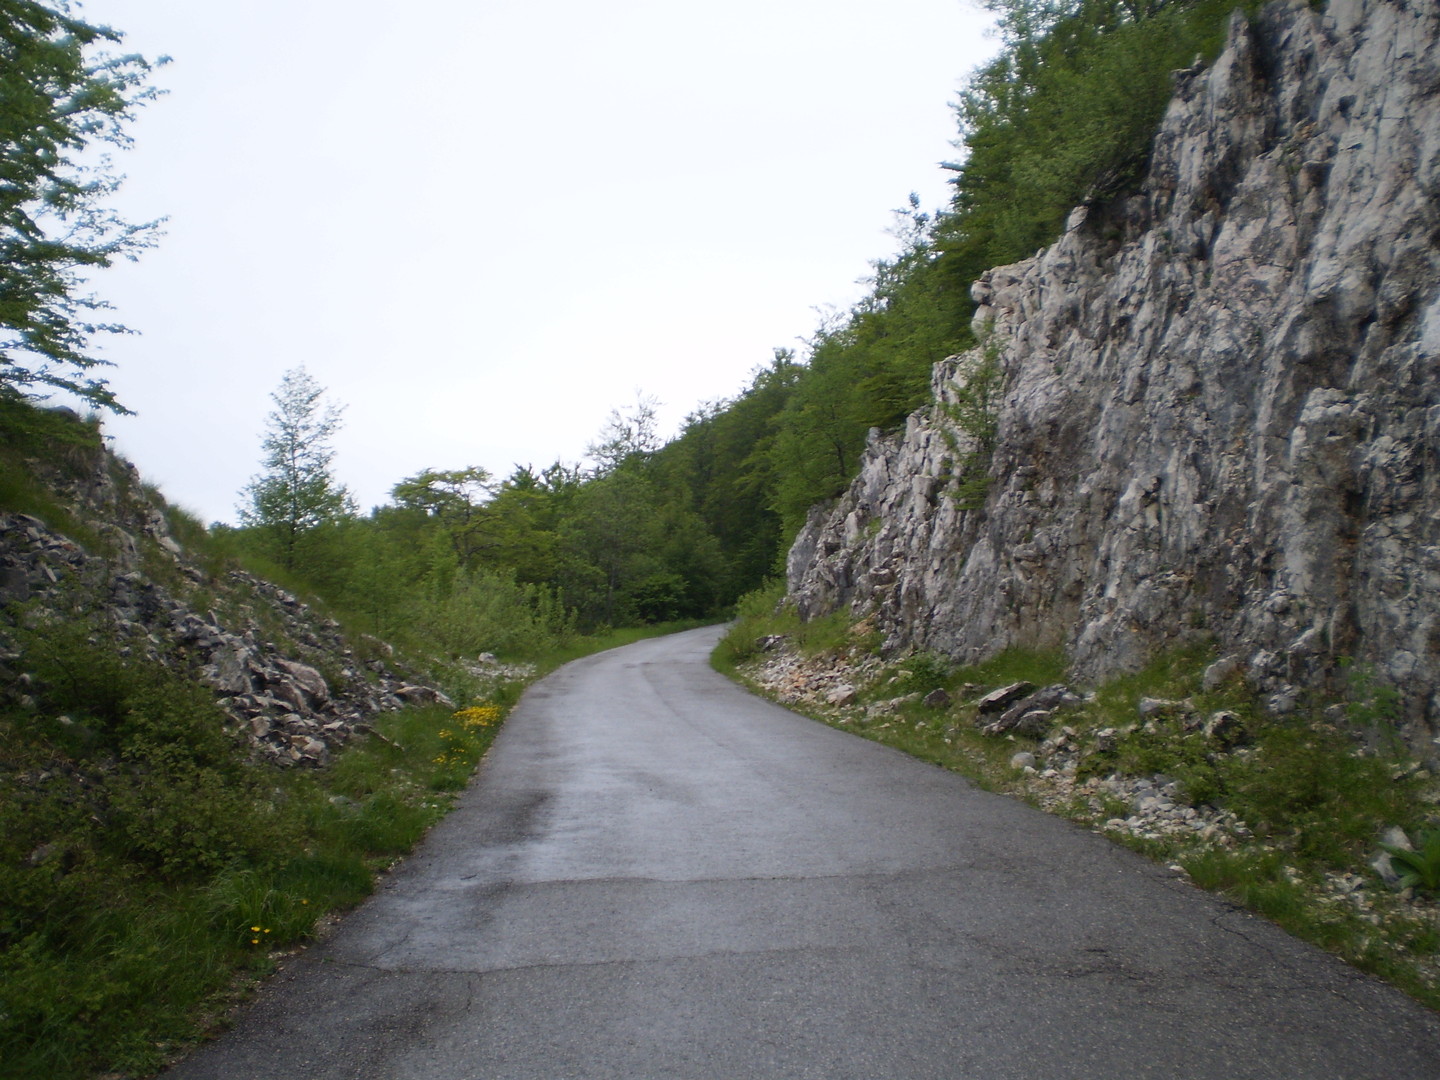 Meistens verläuft die Zufahrt zum Vojak durch den Wald an der Küstenseite des Berges entlang. Nur für ein paar Meter wechselt die Straße auf die Inlandsseite, wo man dann in einer Kurve auch kurz einen Blick auf die Julischen Alpen hat. Hinter der Kurve führt die Straße durch diesen Felsdurchbruch auf die Küstenseite zurück. 